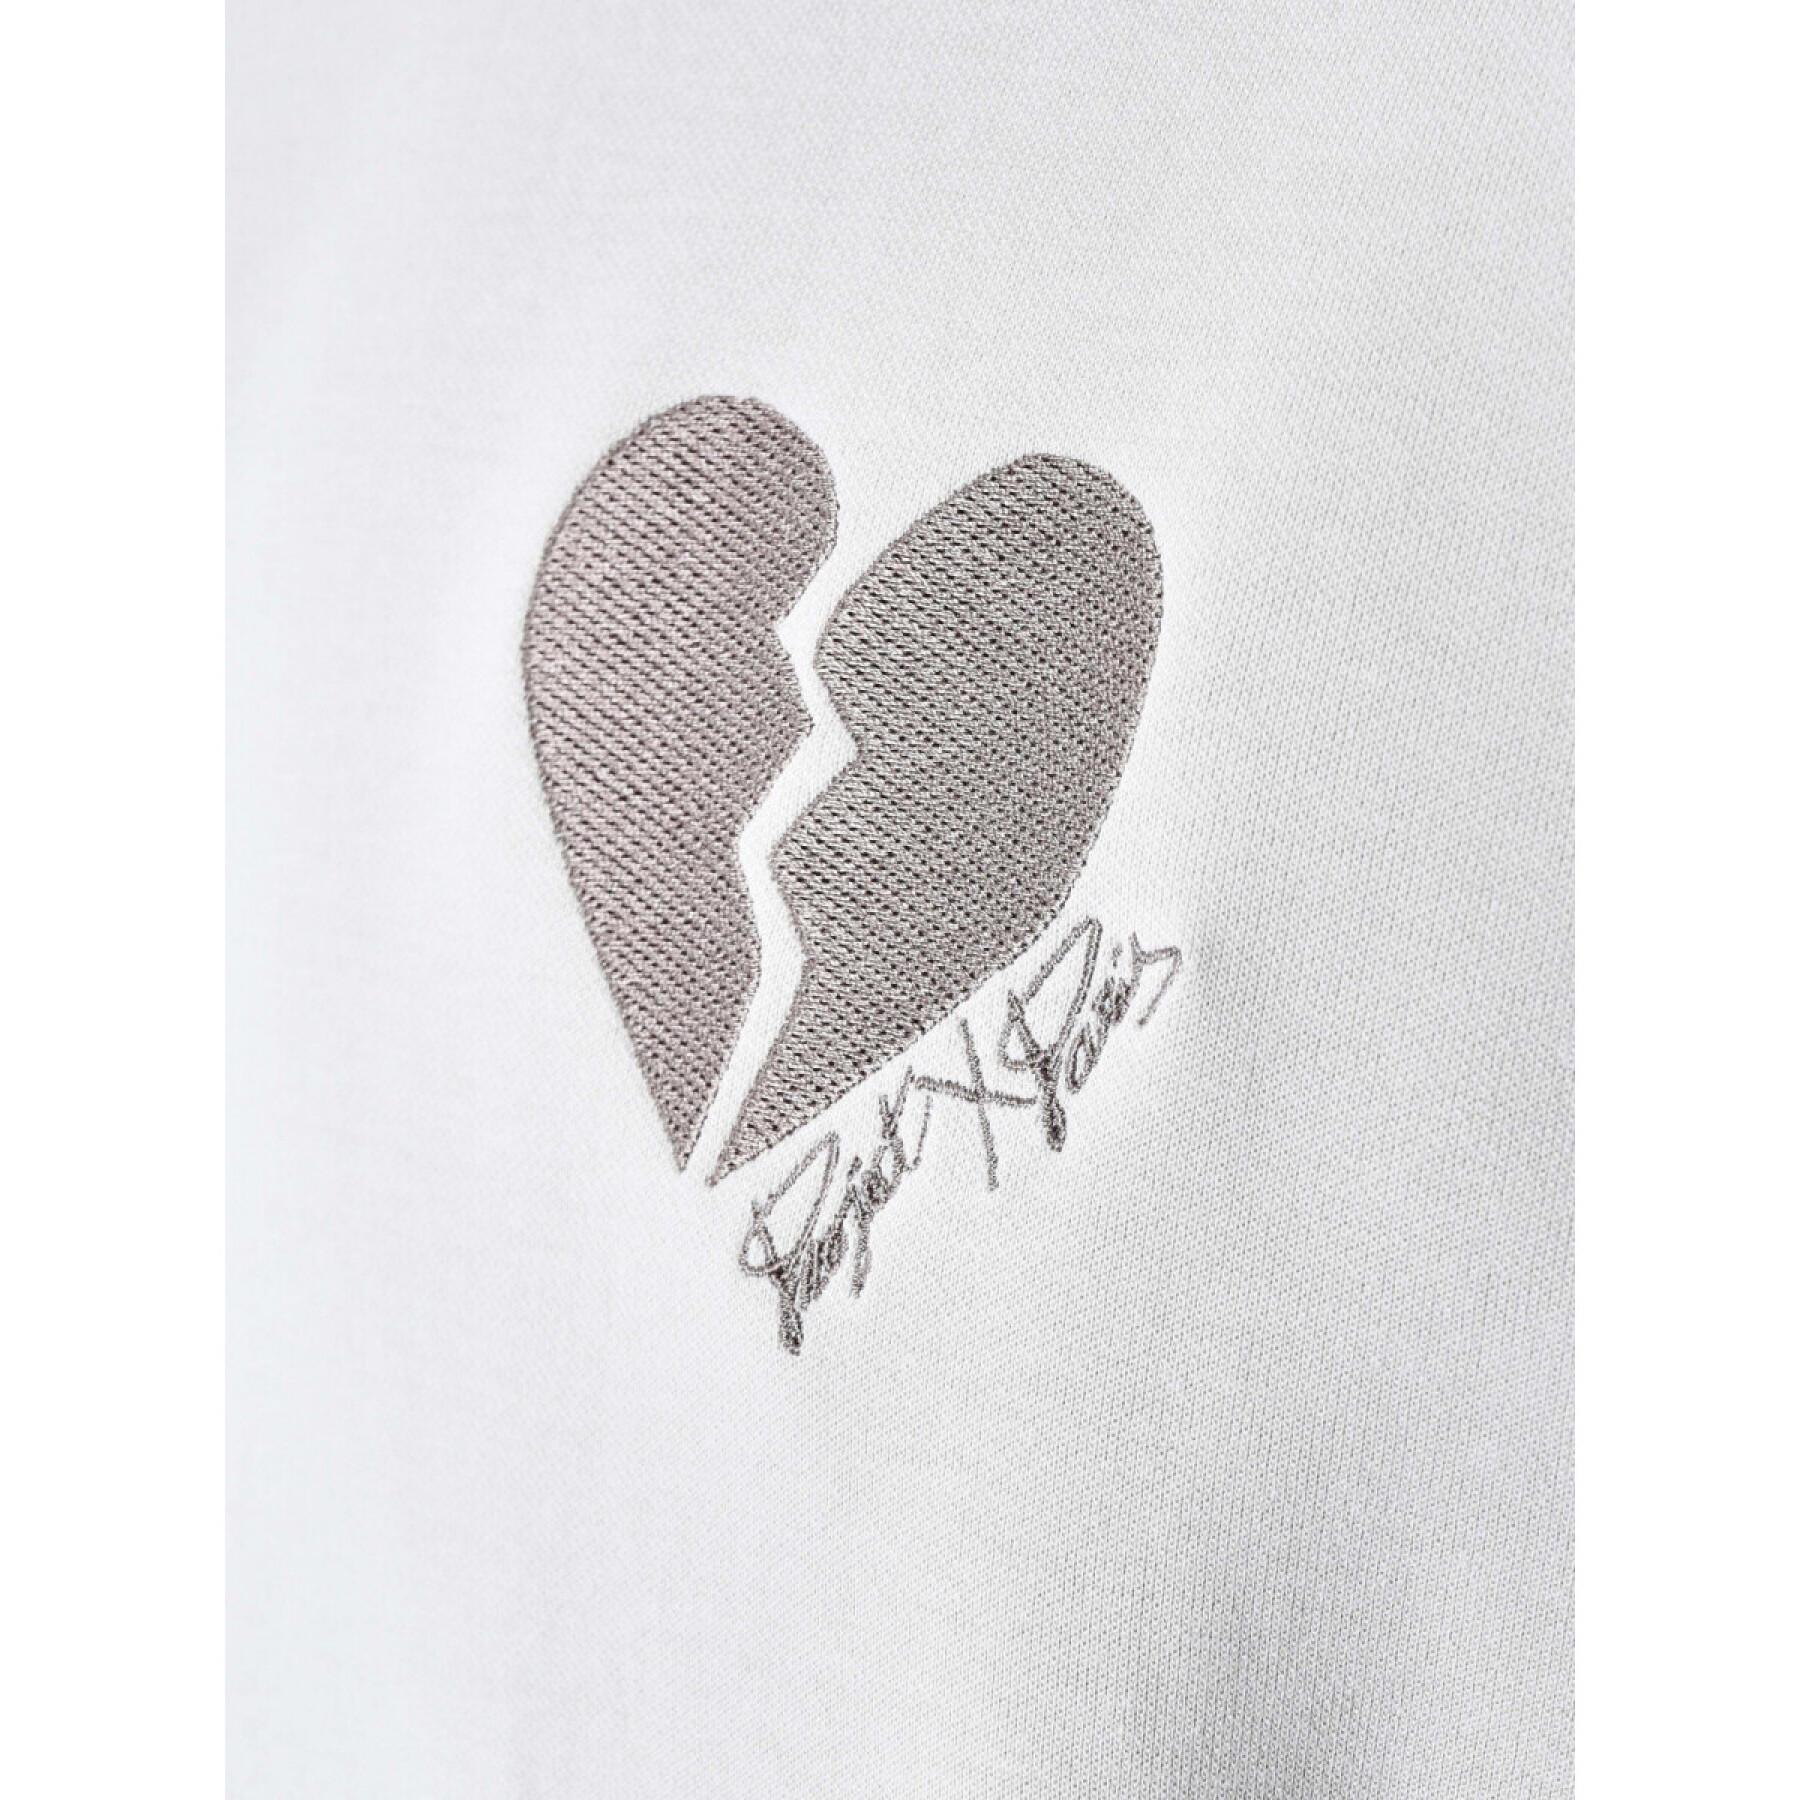 T-shirt "Thick broken heart" (coração partido) Project X Paris